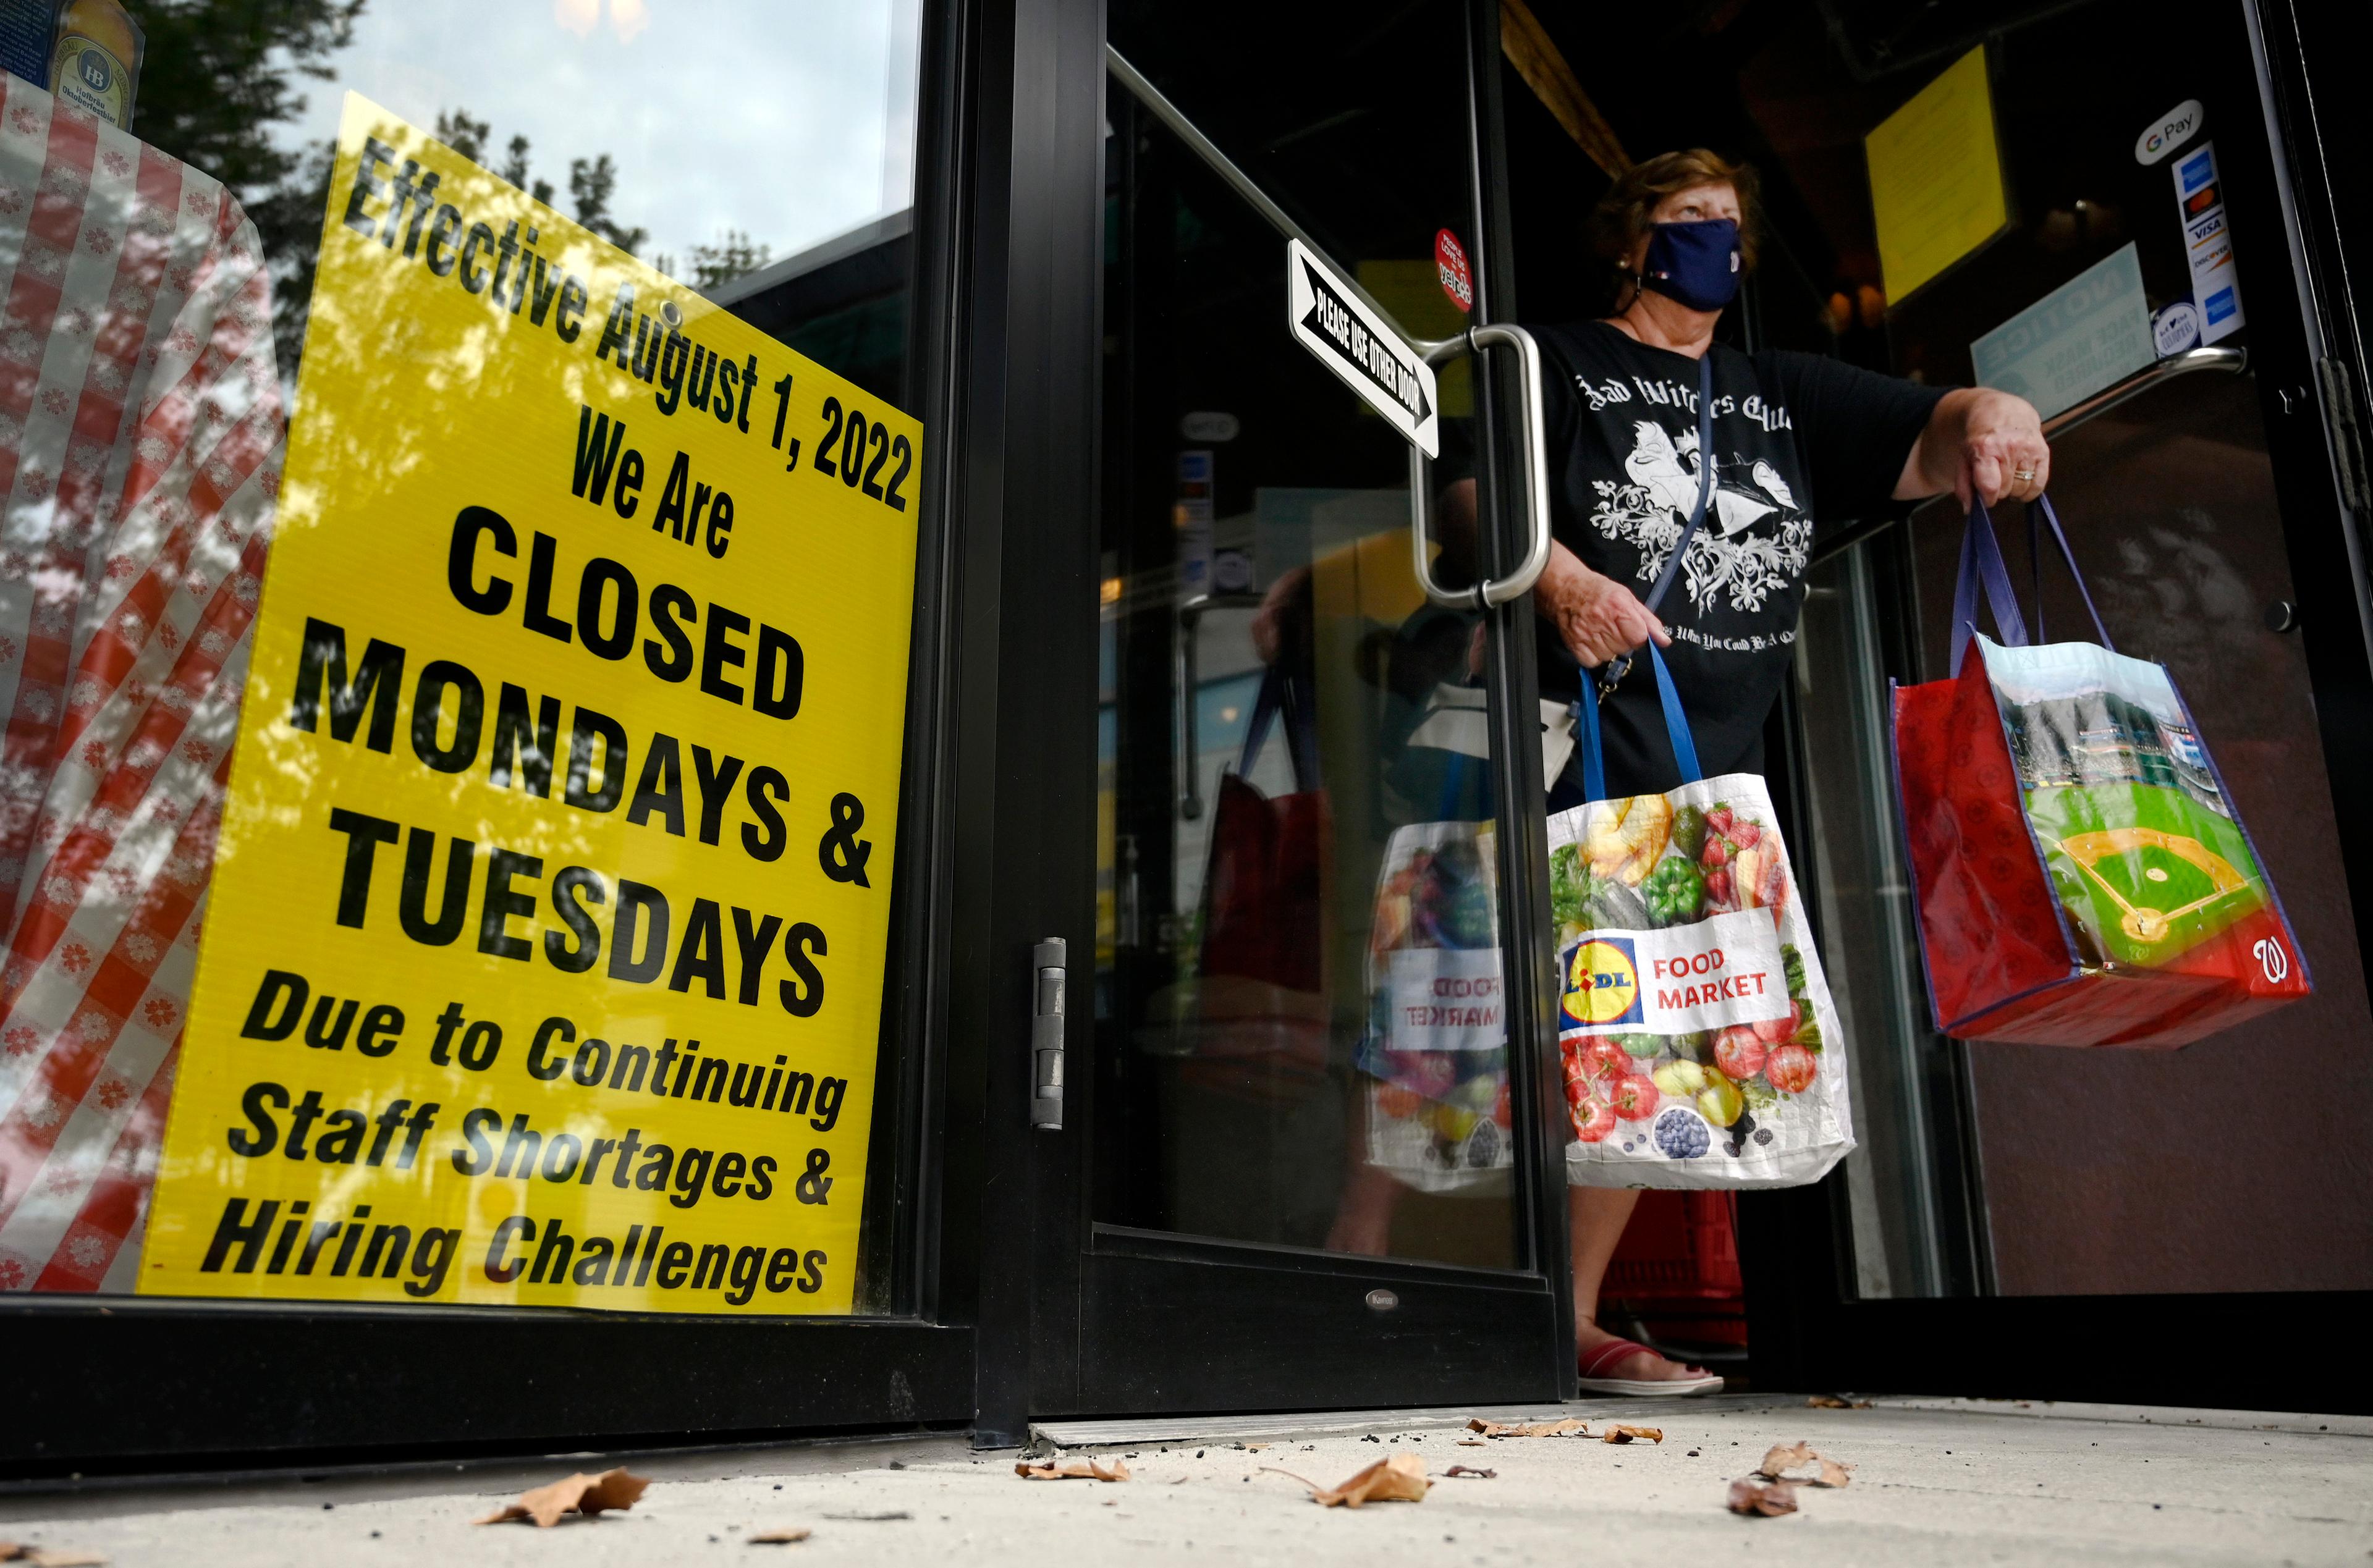 kobieta w maseczce wychodzi ze sklepu, na którym jest napis informujący o zamknięciu w poniedziałki i wtorki ze względu na brak pracowników